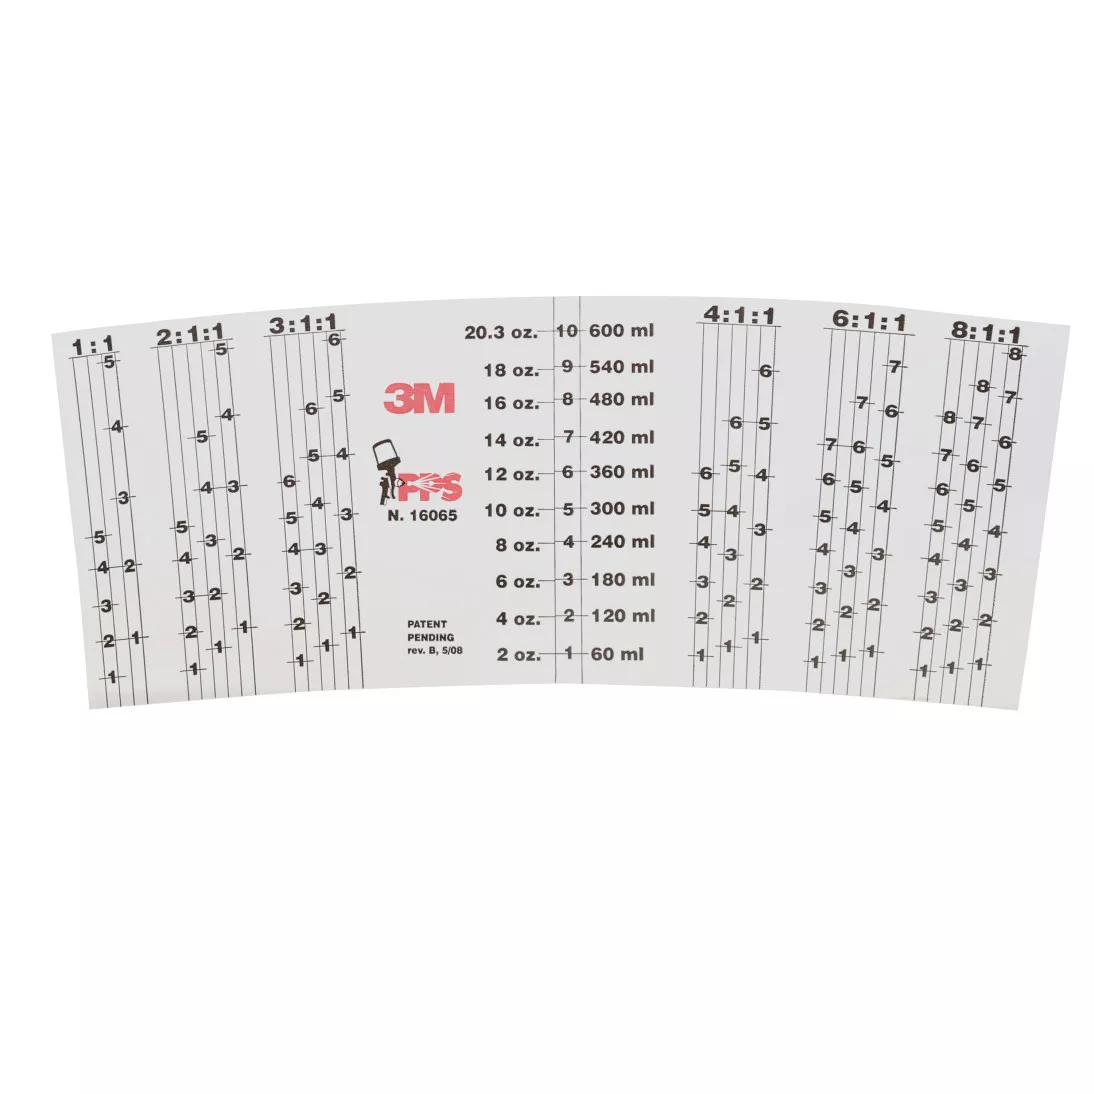 3M™ PPS™ Mix Ratio Inserts, 16065, Standard (22 fl oz), 10 per pack, 10
packs per case